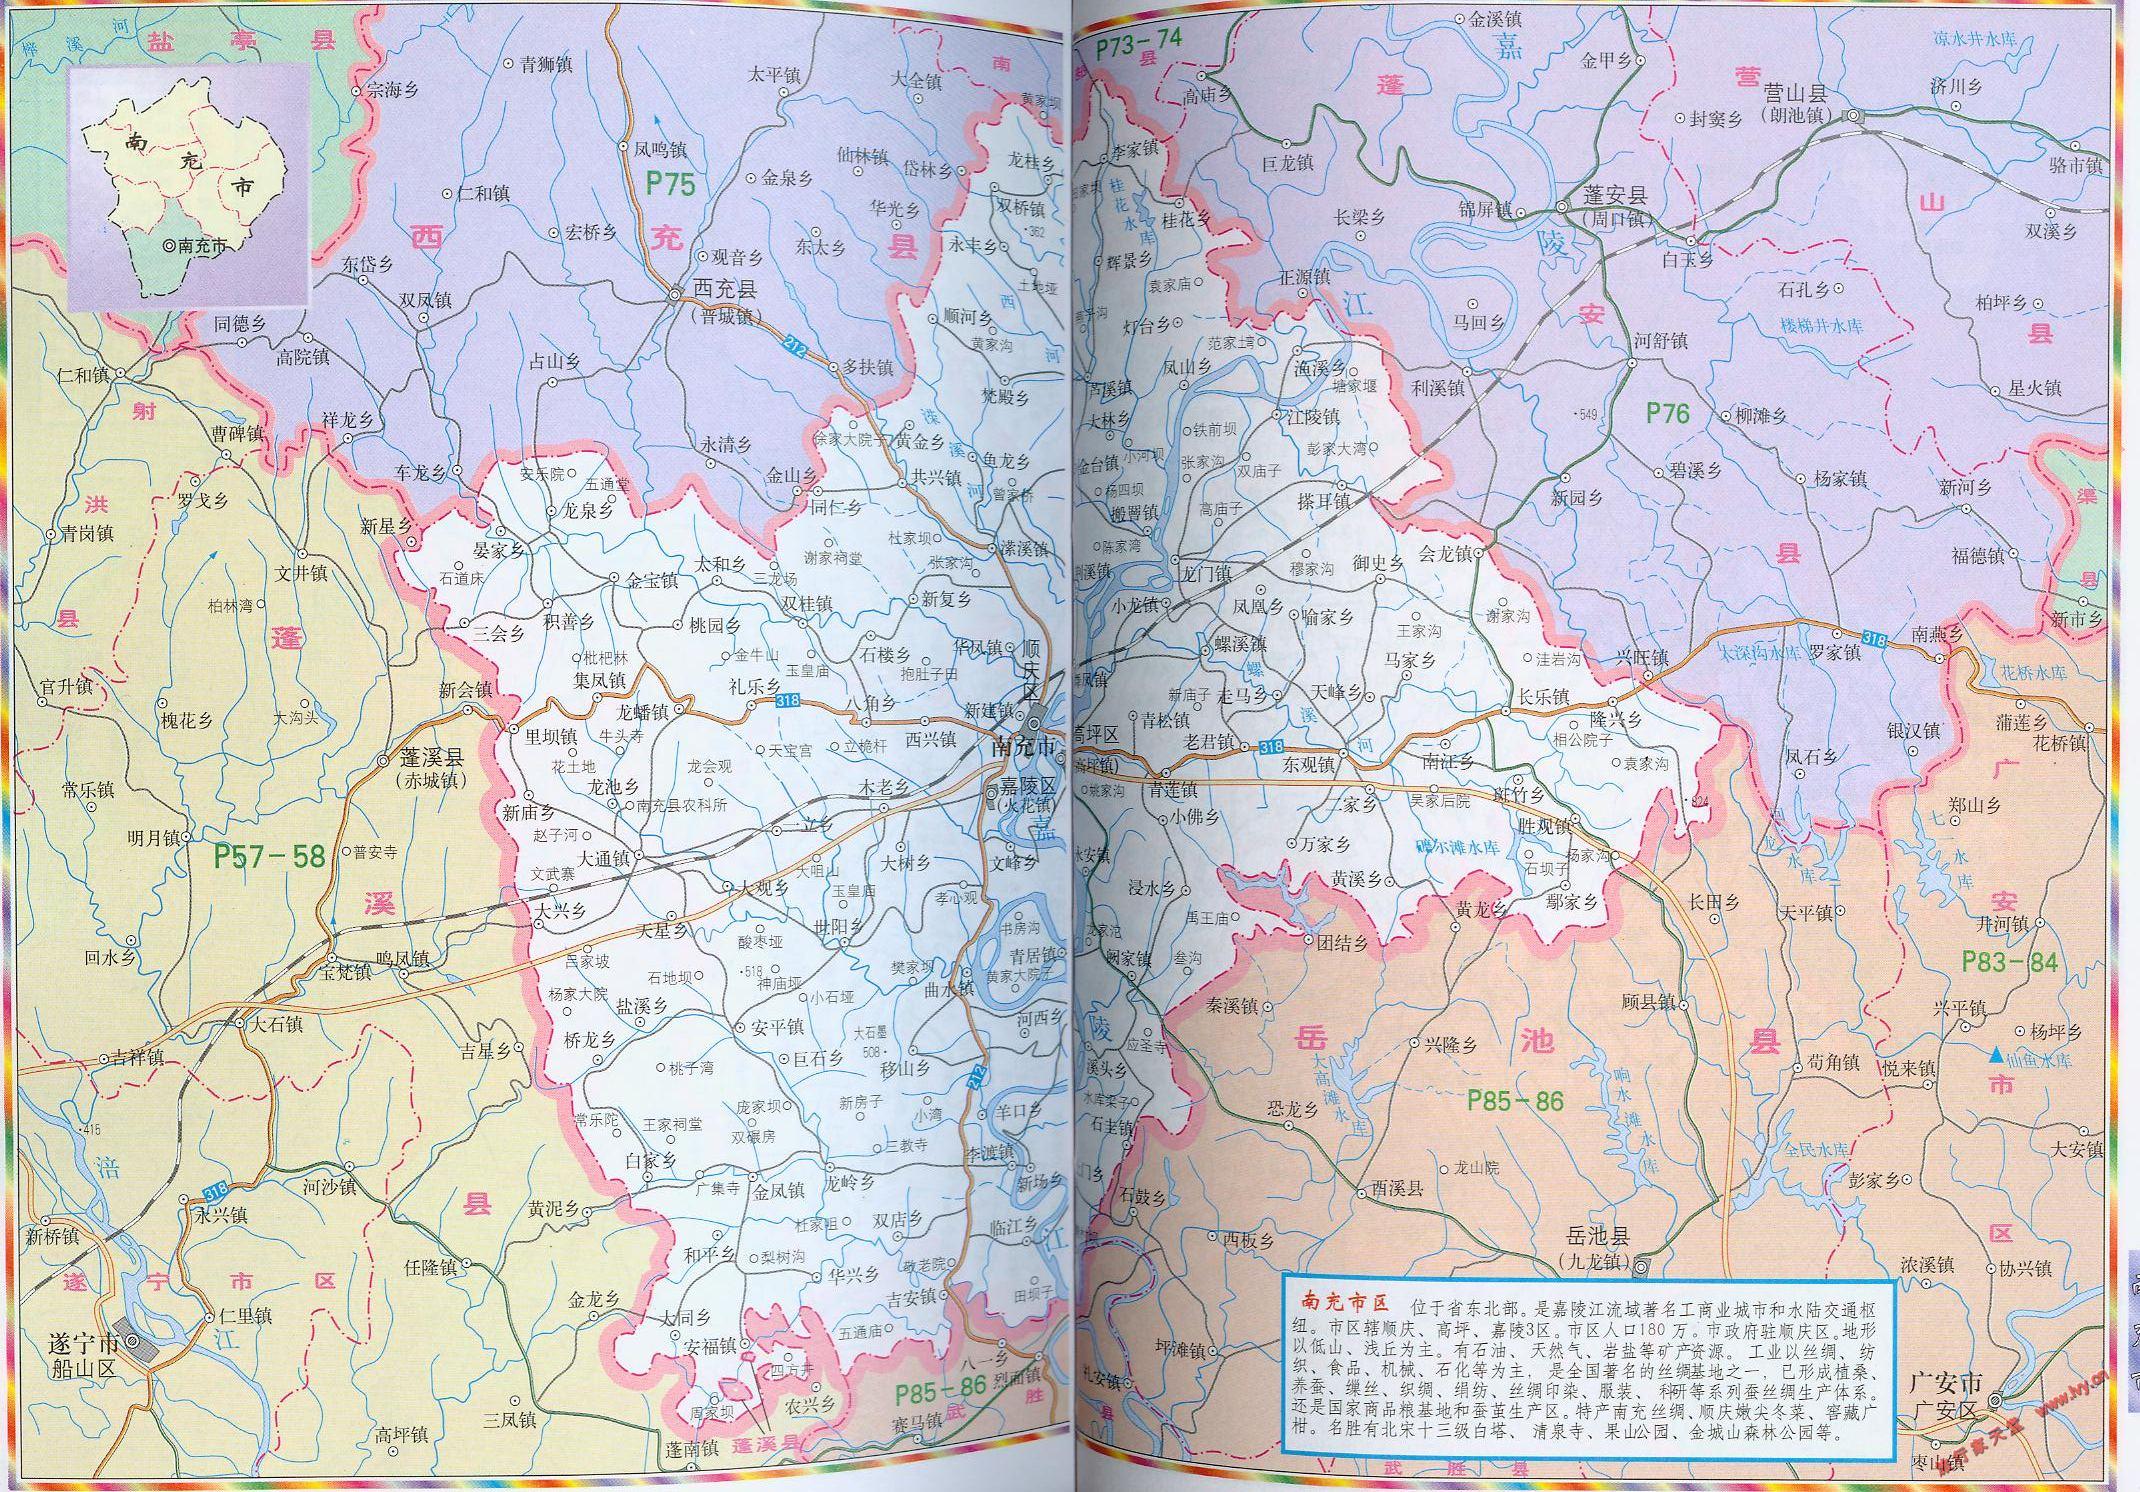 地图窝 中国地图 四川 南充  (长按地图可以放大,保存,分享)图片